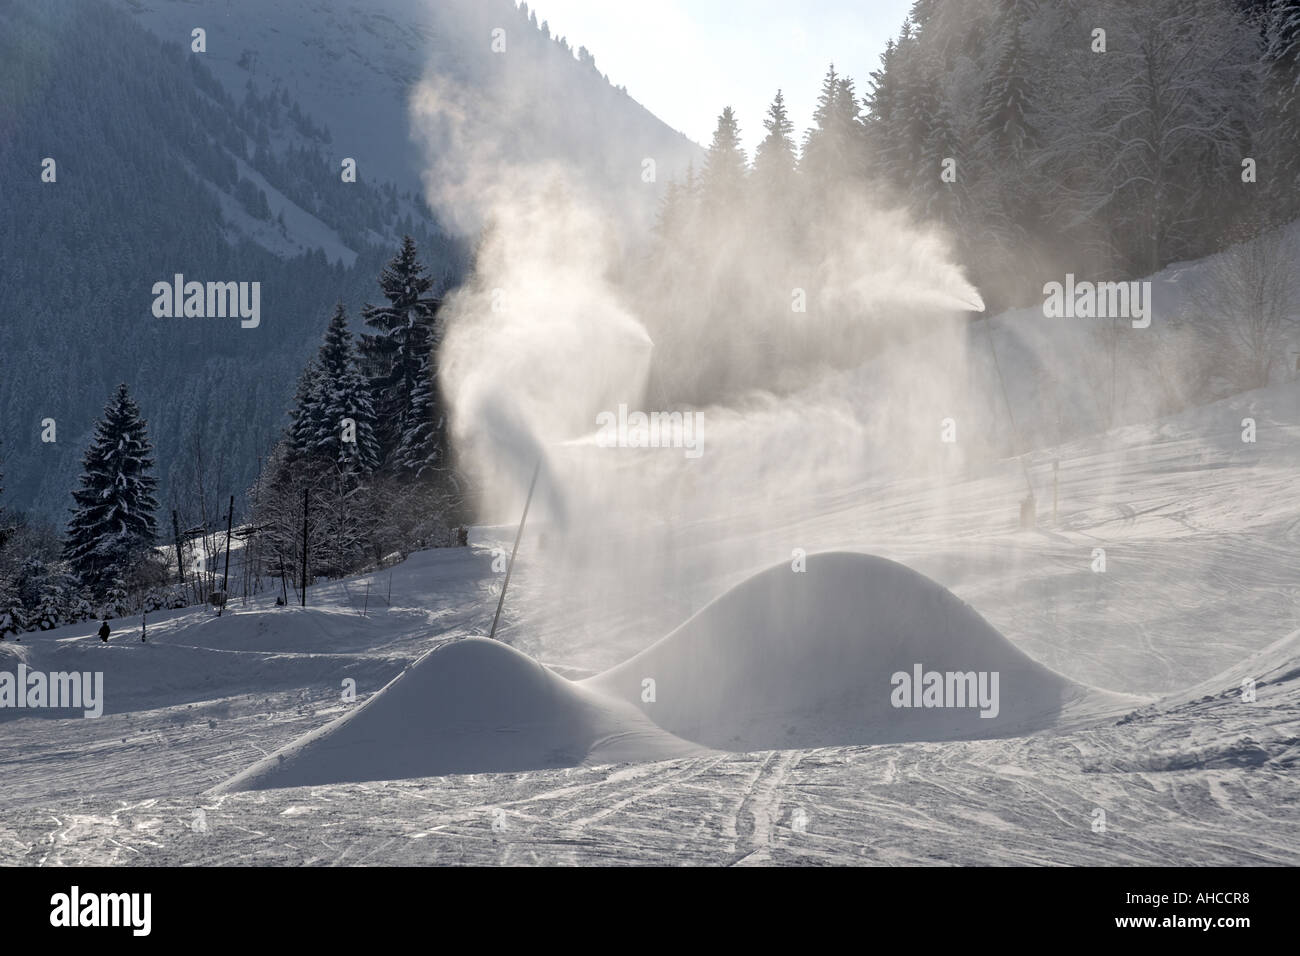 Monticules de neige une bouilloire canon a neige dans les sports d'hiver ski resort domaine de Morzine Haute Savoie Alpes France Banque D'Images